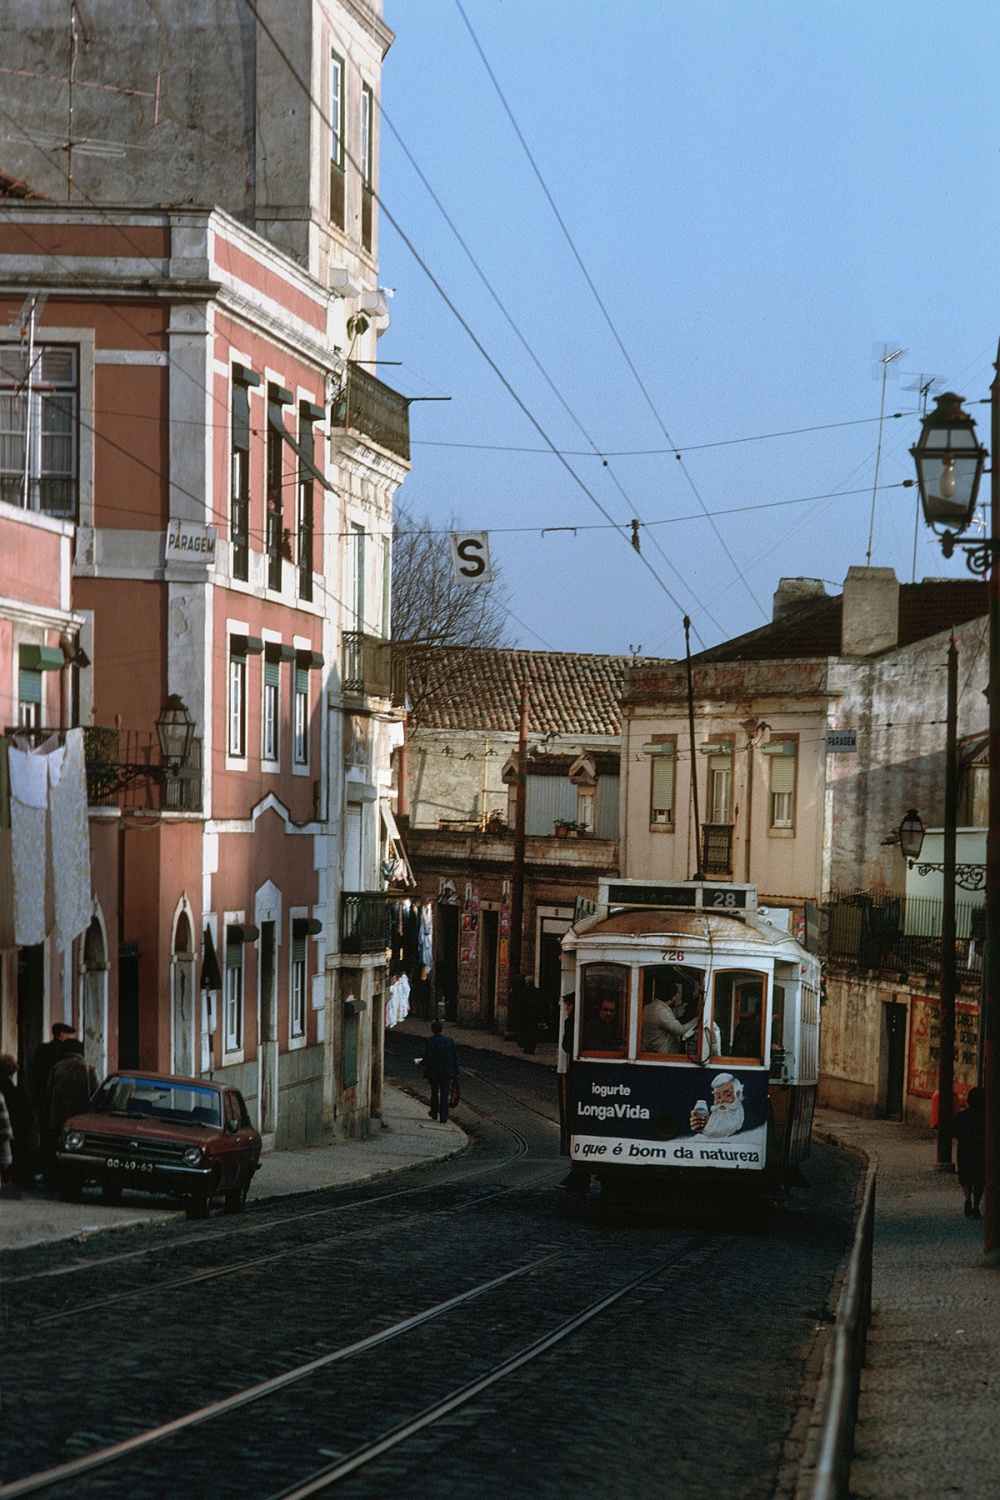 bill-hocker-street-tram-lisbon-portugal-1983